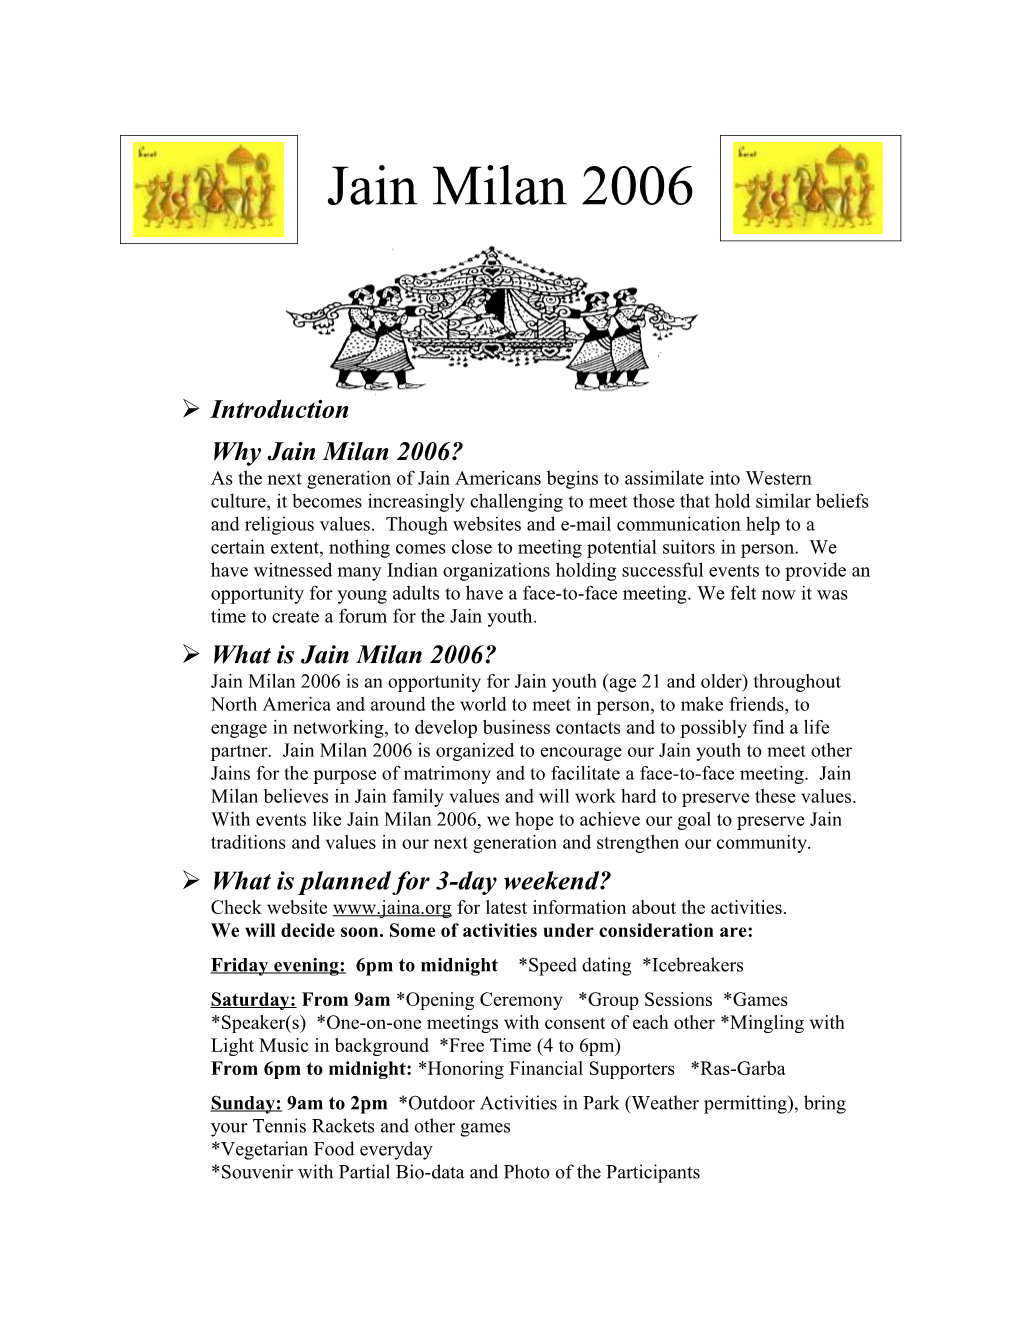 Why Jain Milan 2006?